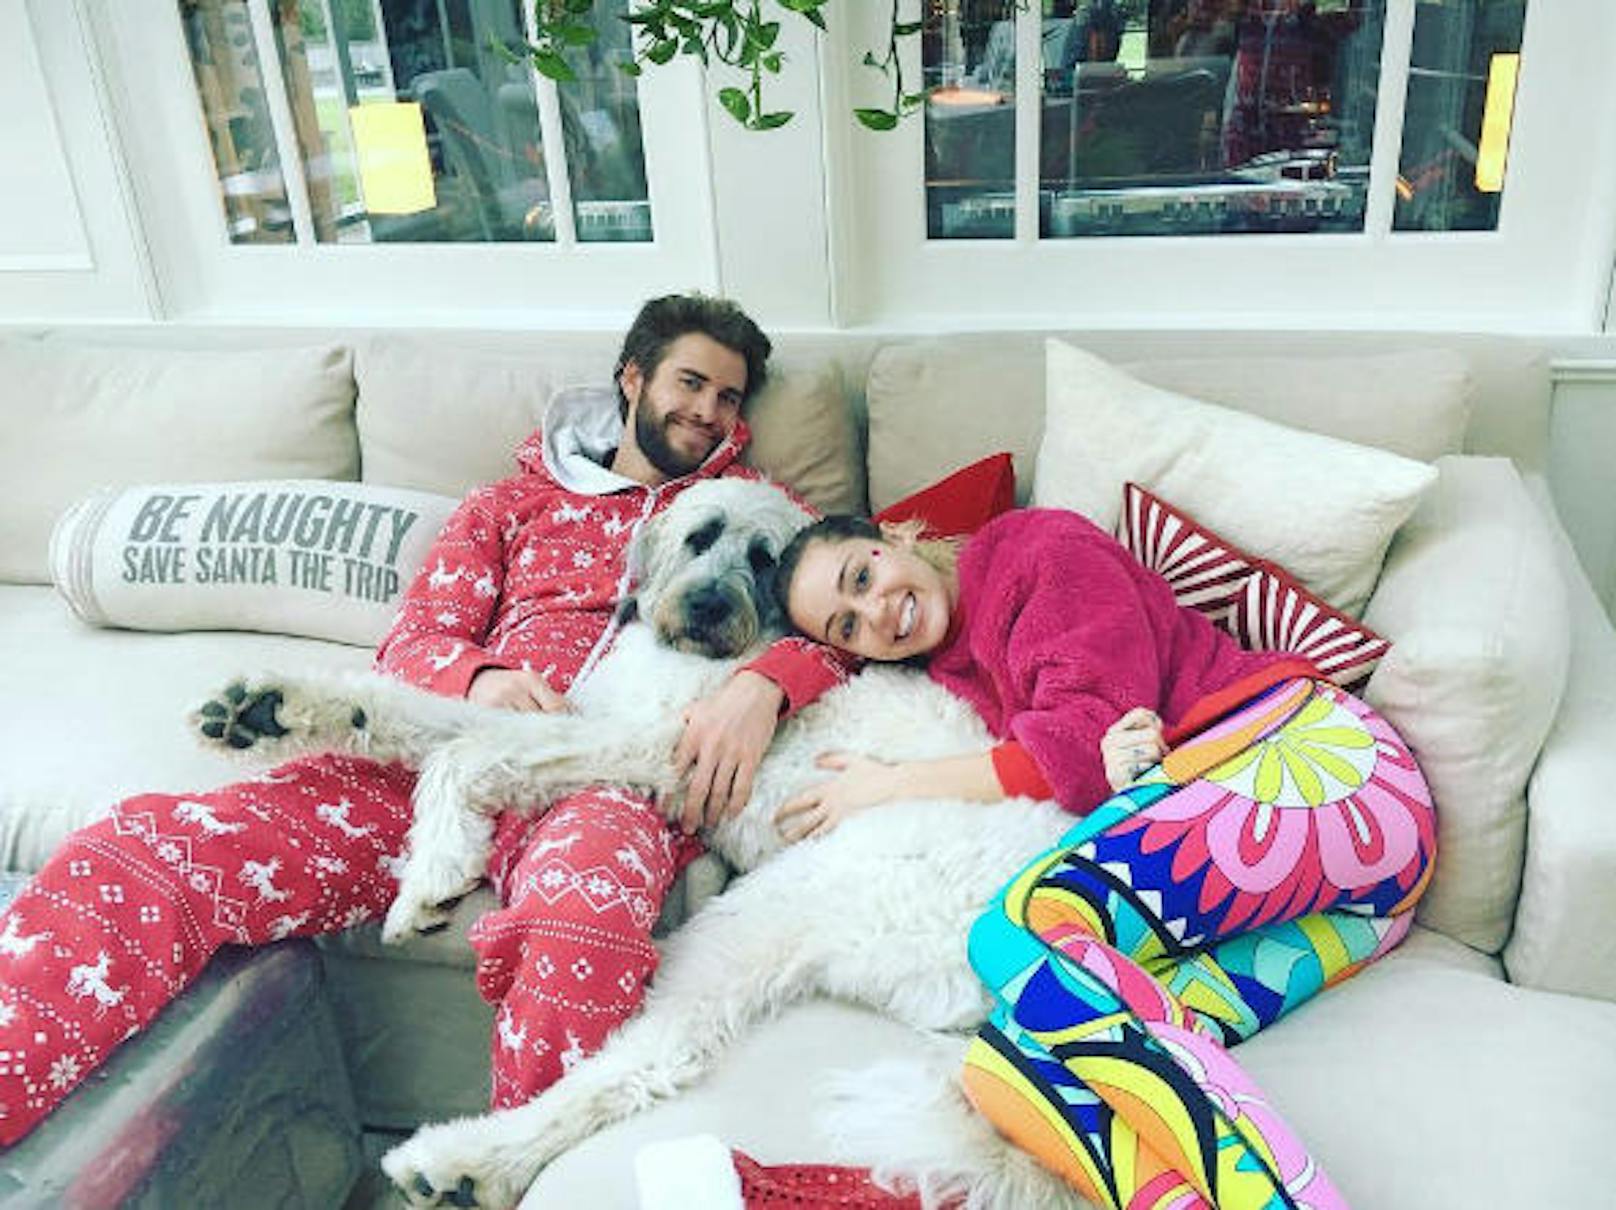 Ewig zusammen: Miley Cyrus feierte das Weihnachtsfest 2016 gemütlich auf der Couch mit ihrem Freund Liam Hemsworth und ihrer Hündin "Dora".